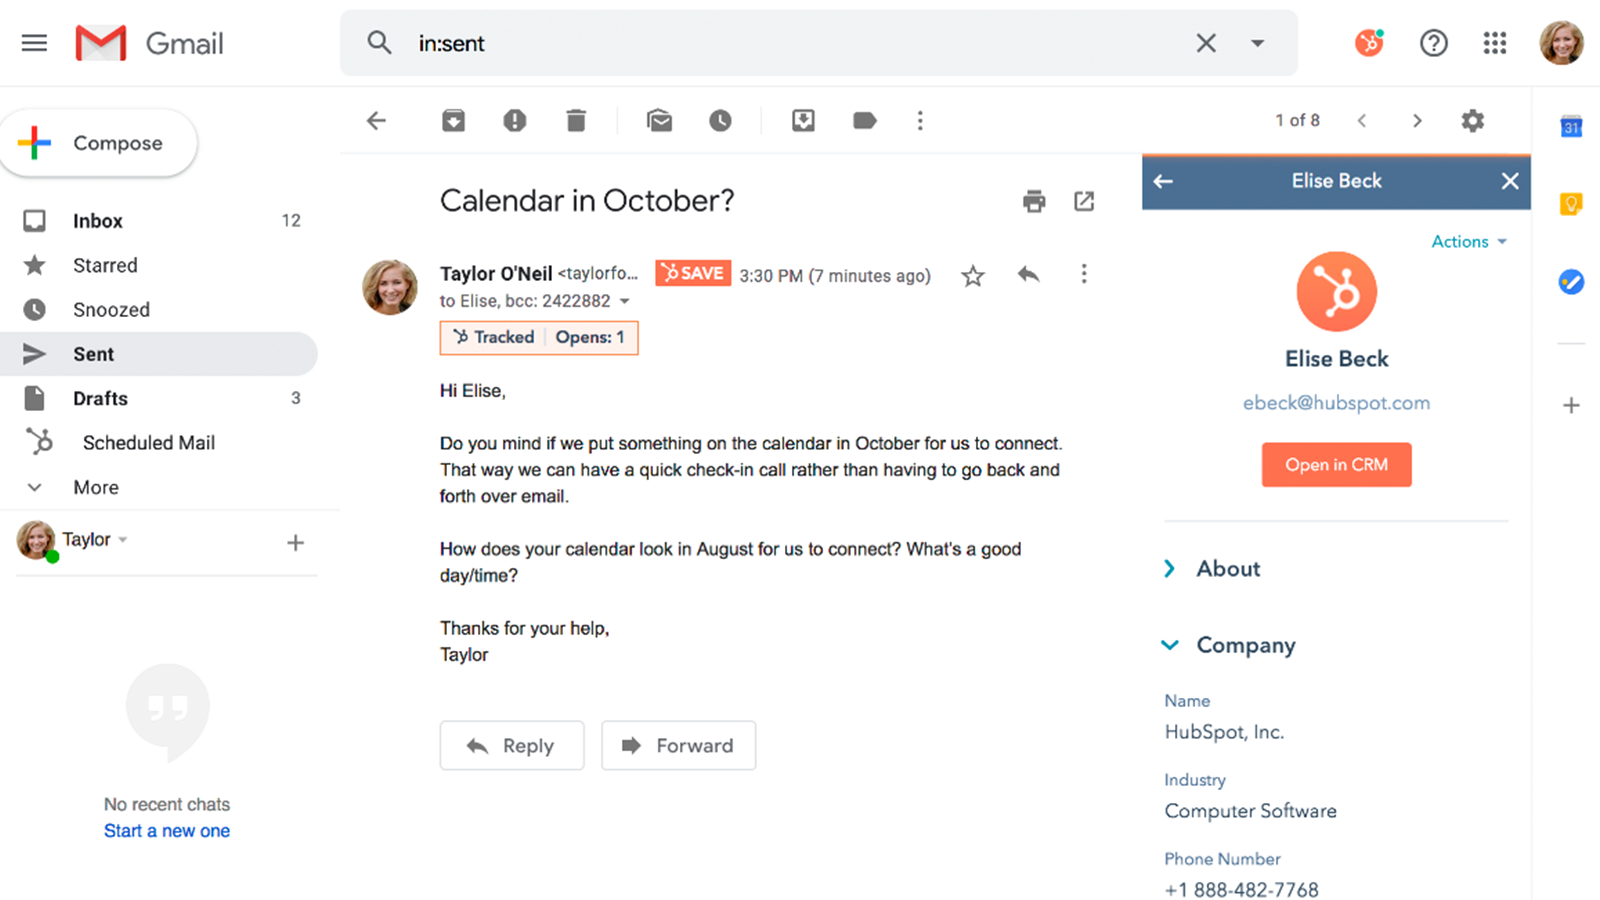 HubSpot - Gmail Integration Screenshot